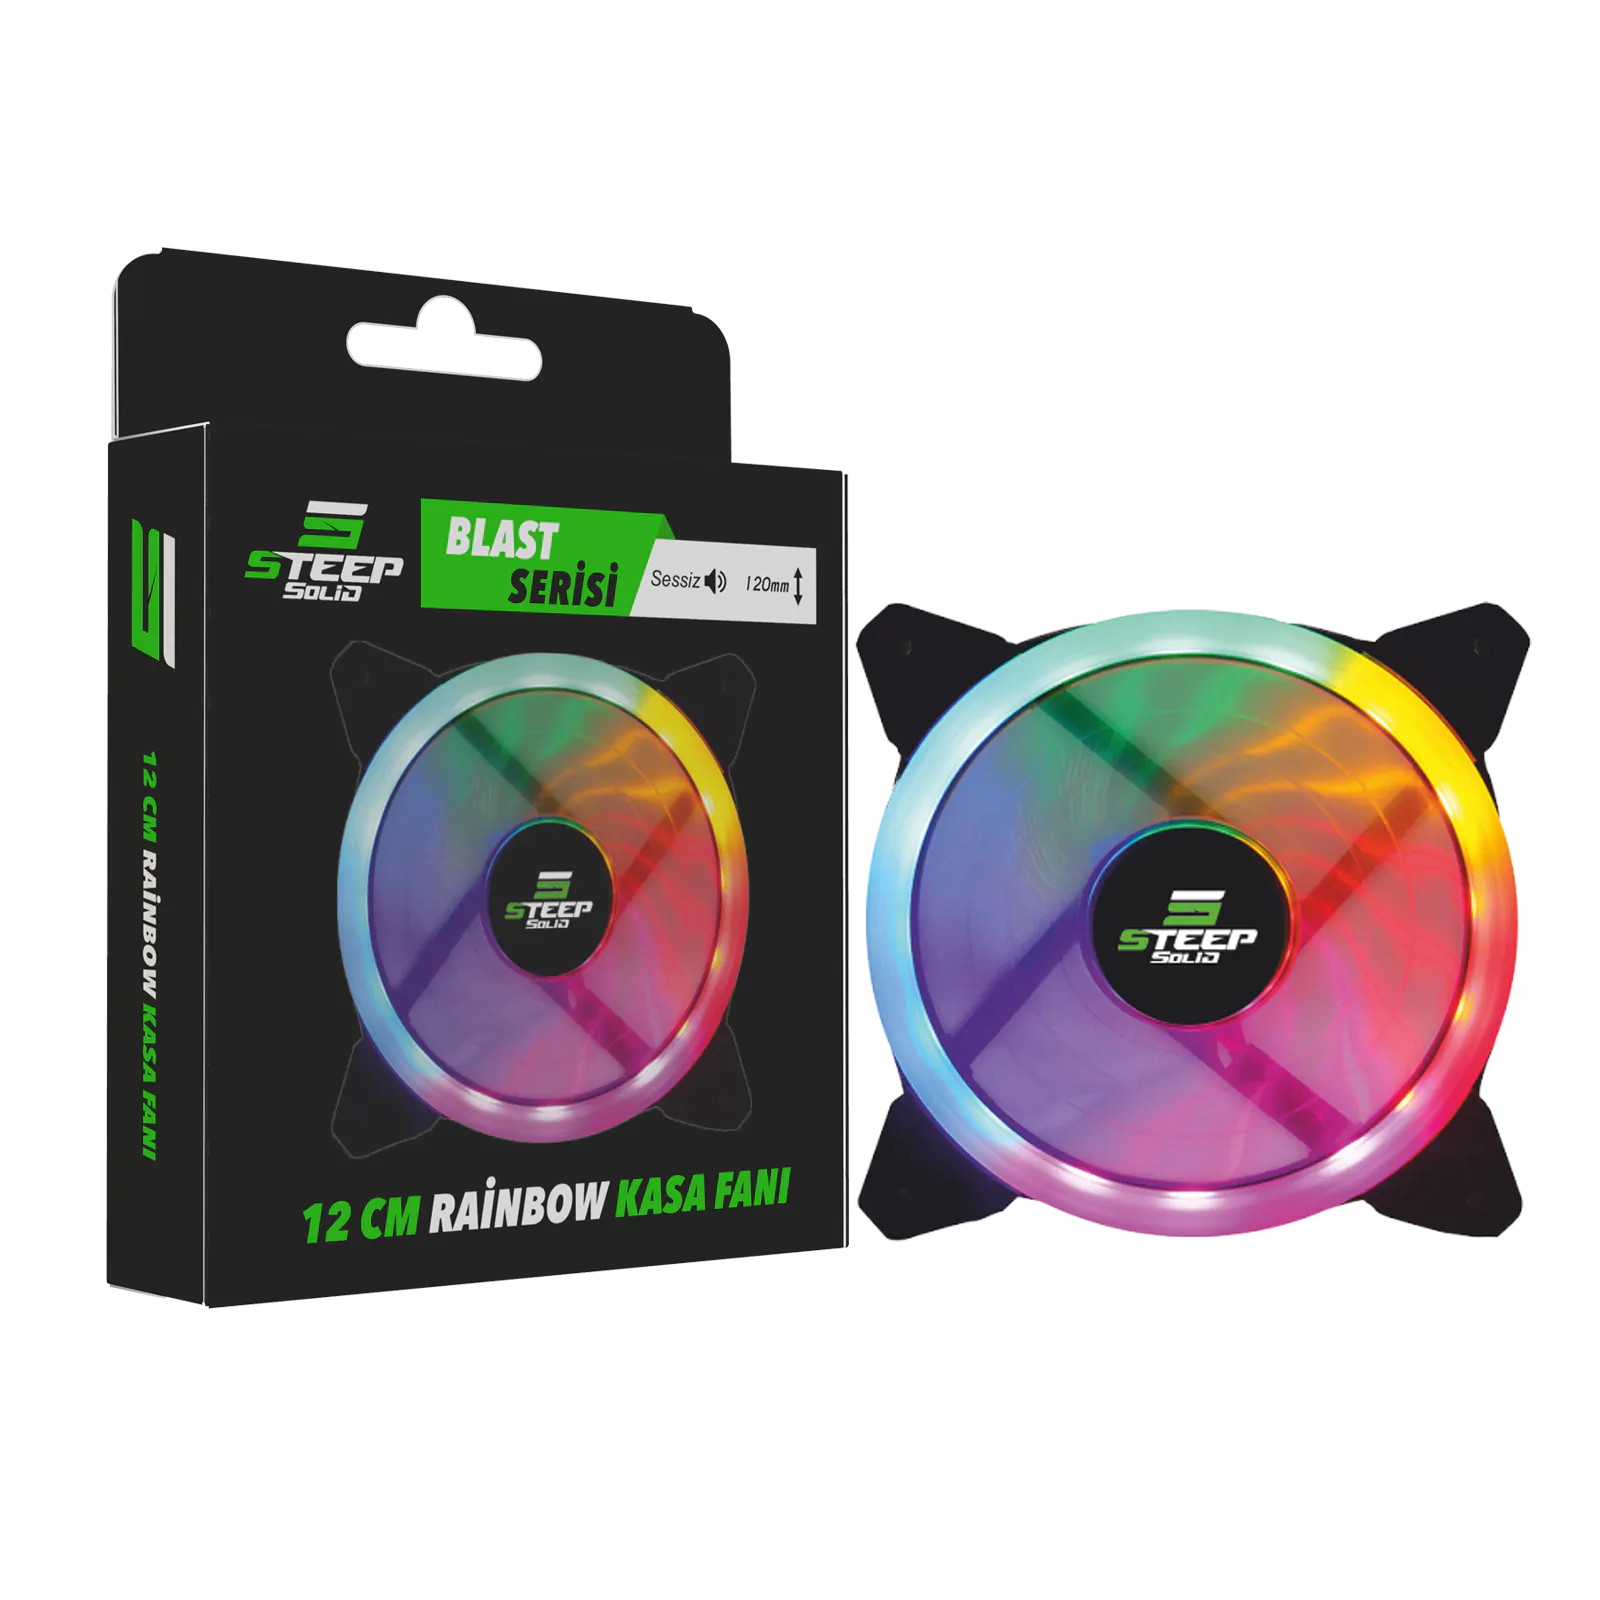 Steep Solid Blast Serisi 12cm Rainbow Led Fan - Performans Seri Sessiz Kasa Fanı